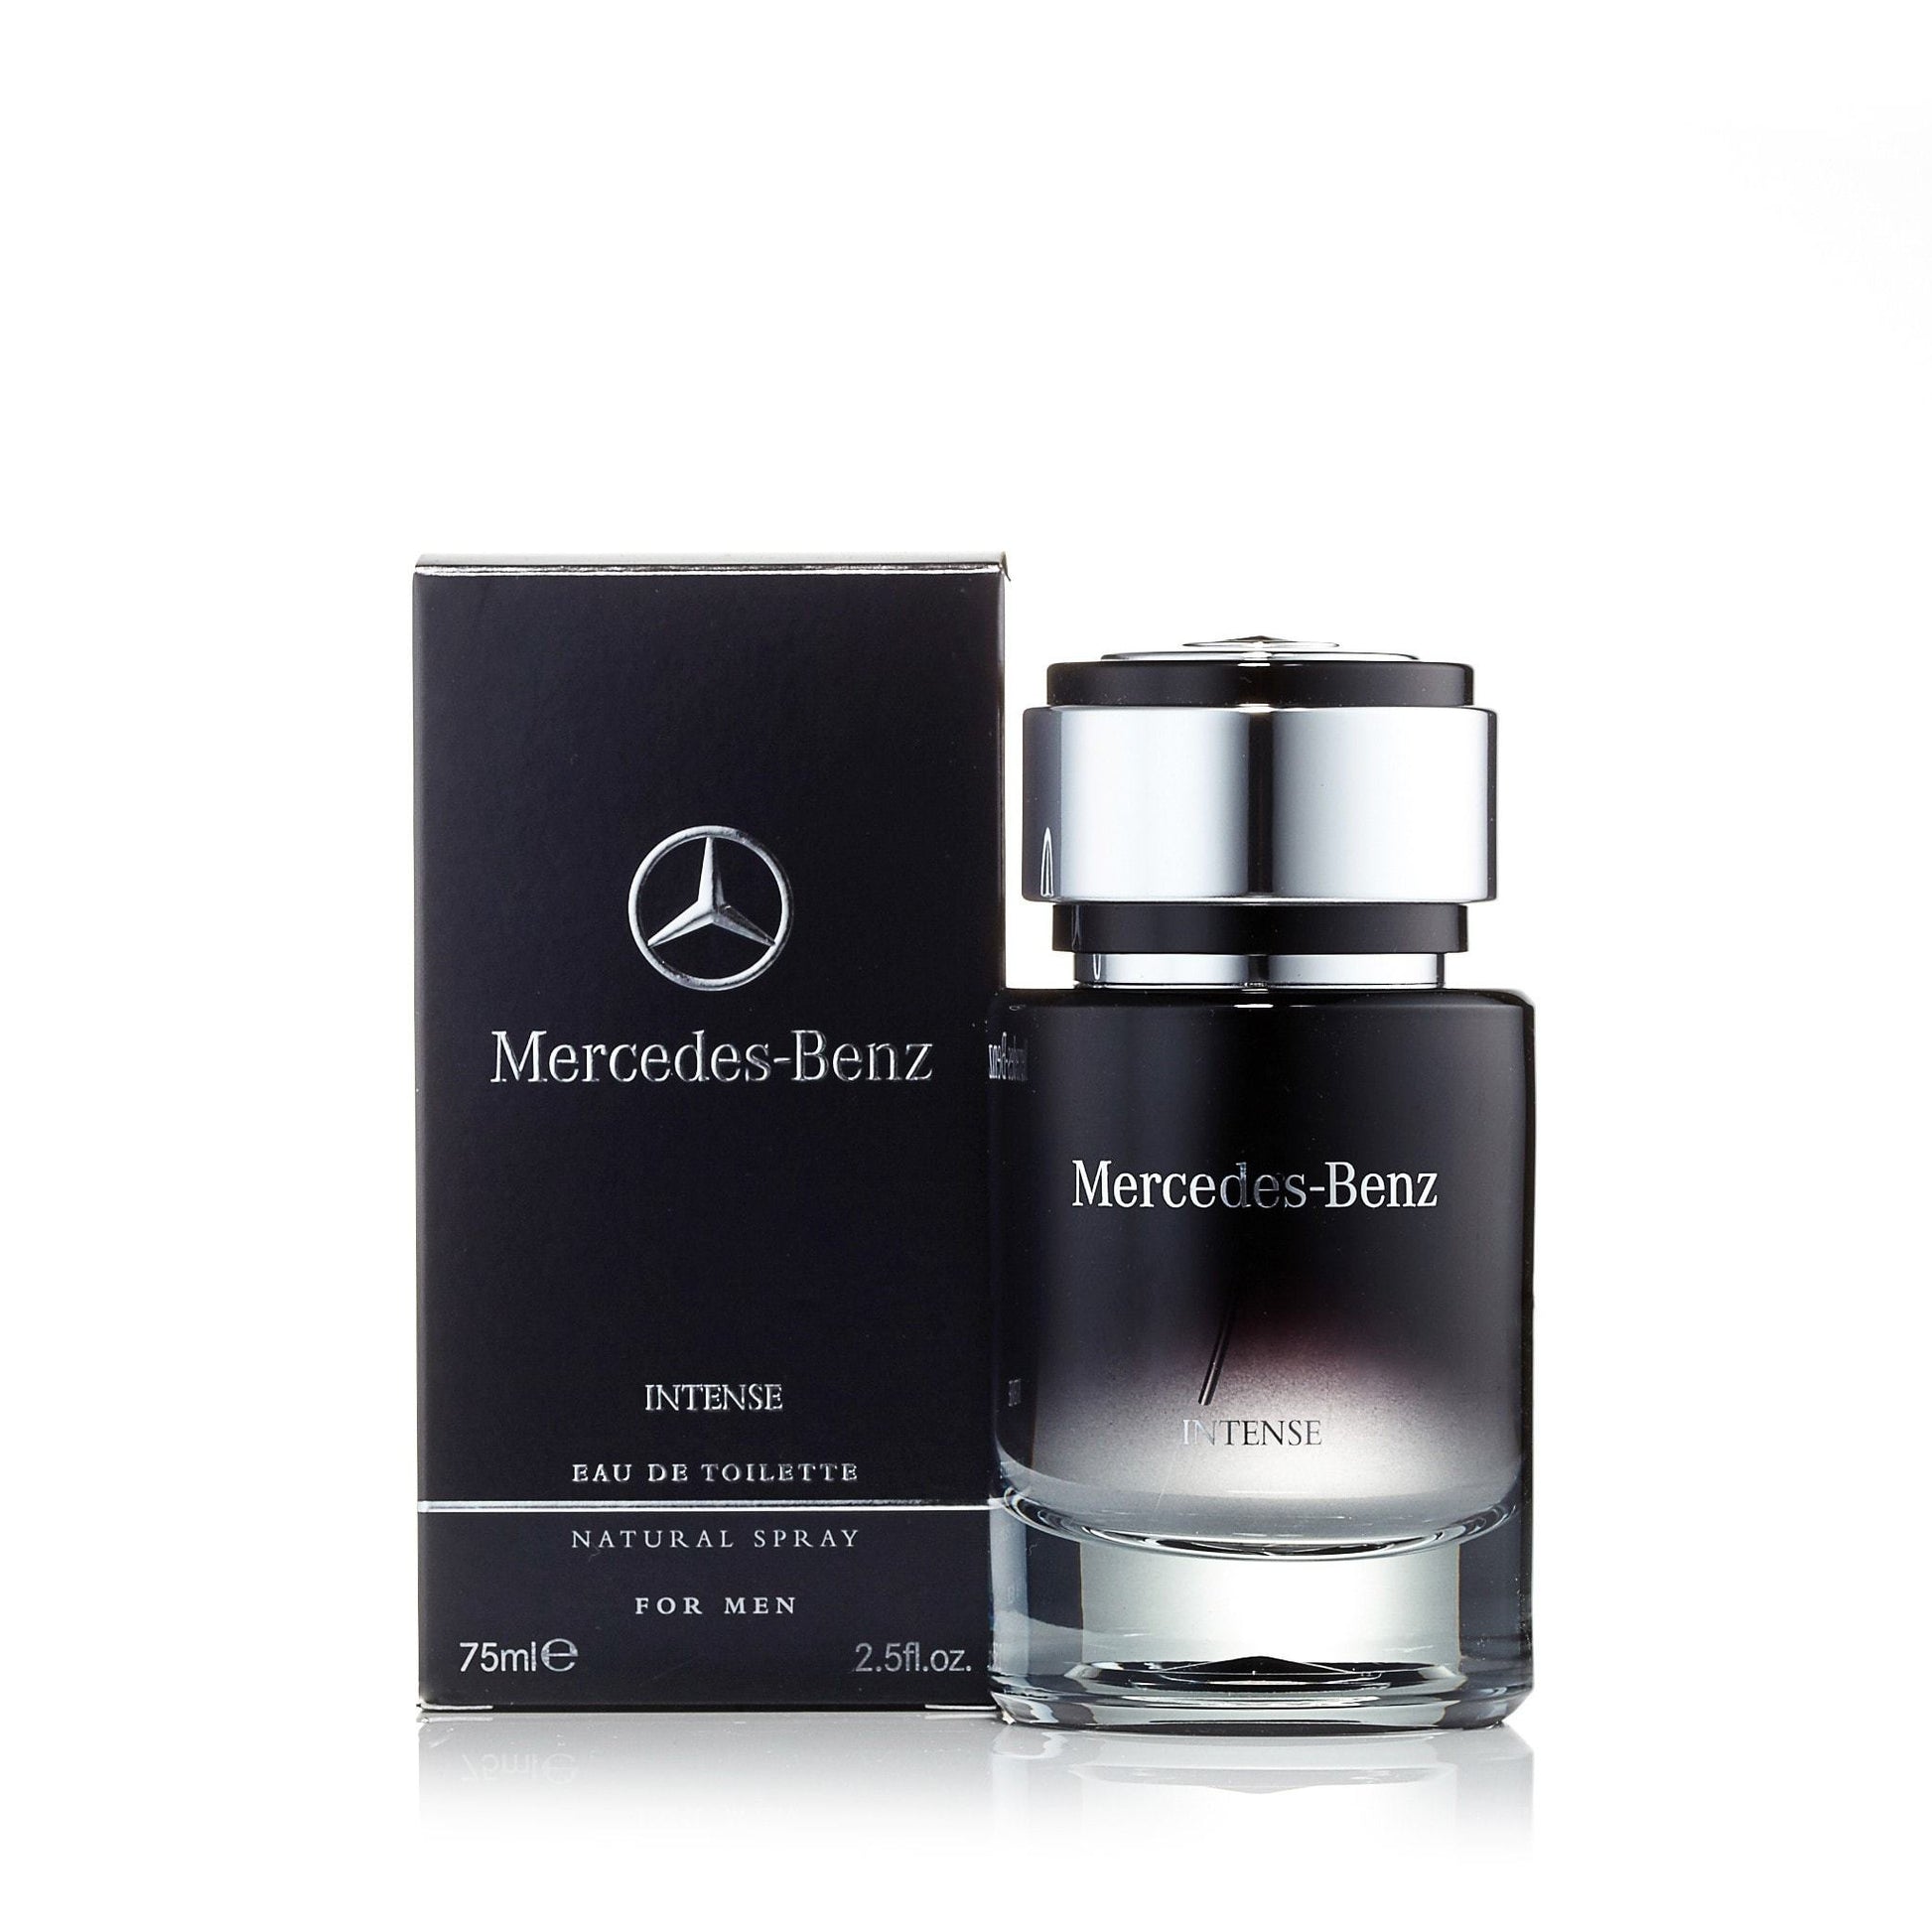 Intense Eau de Toilette Spray for Men by Mercedes-Benz, Product image 3